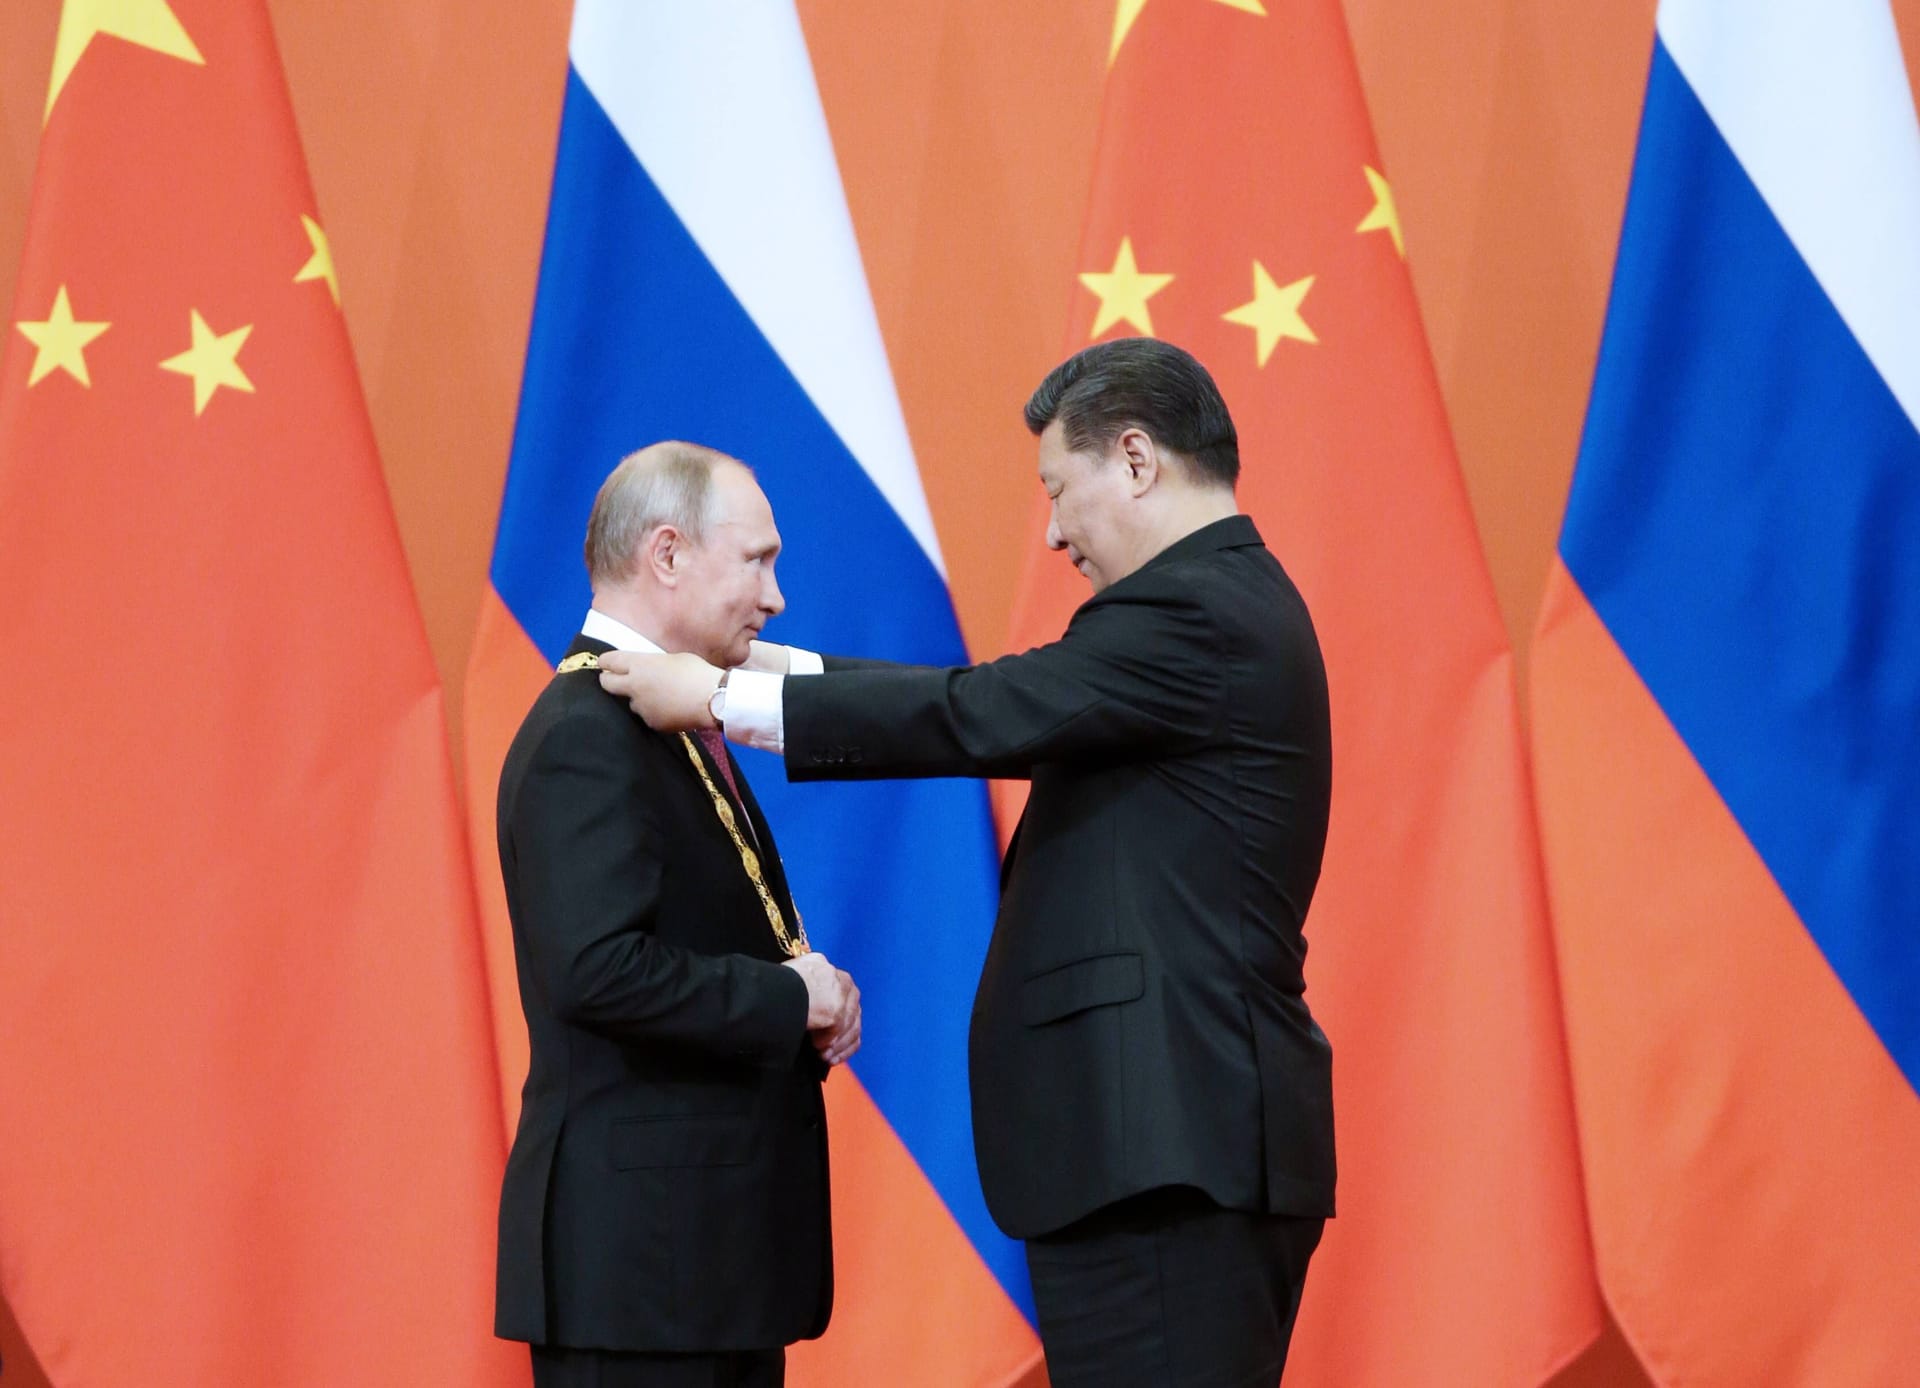 Daraufhin verleiht Xi seinem russischen Amtskollegen im Jahr 2018 in Peking die erstmals verliehene Freundschaftsmedaille der Volksrepublik China